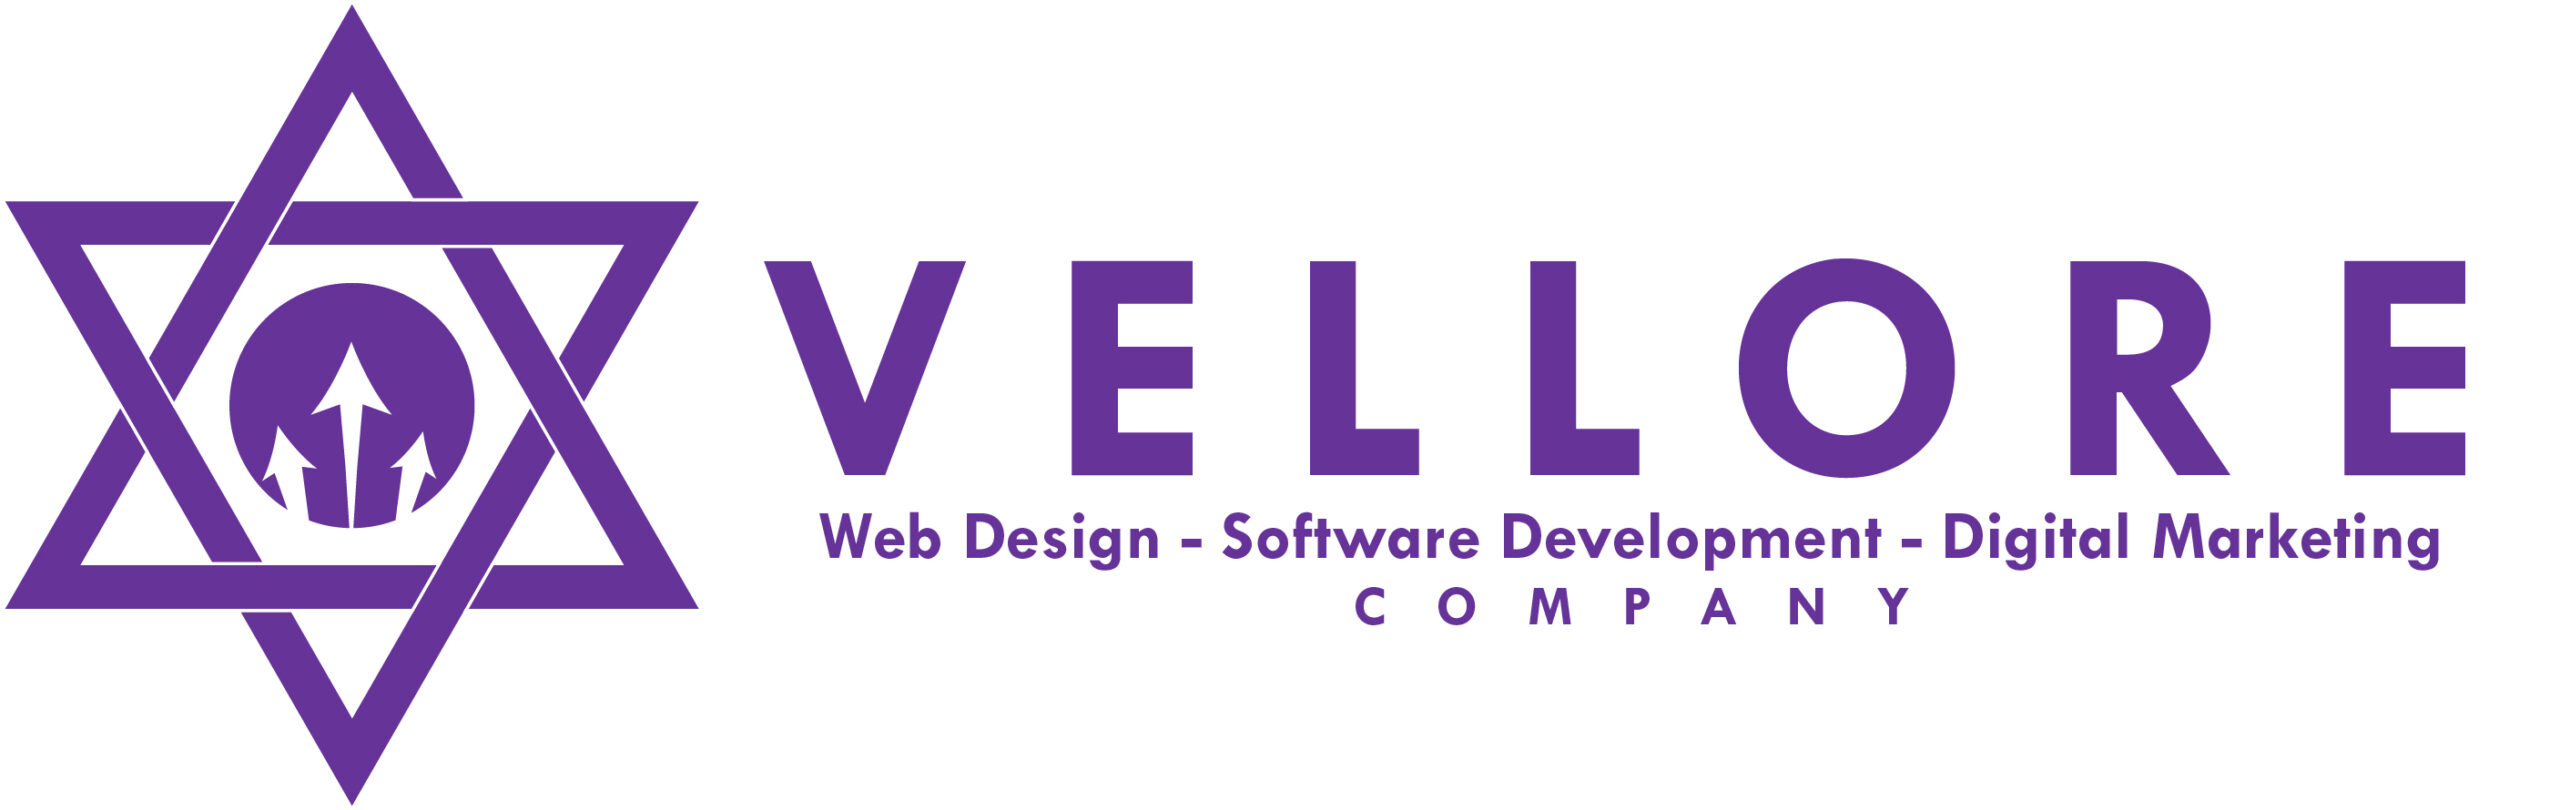 Vellore Web Design Company Logo